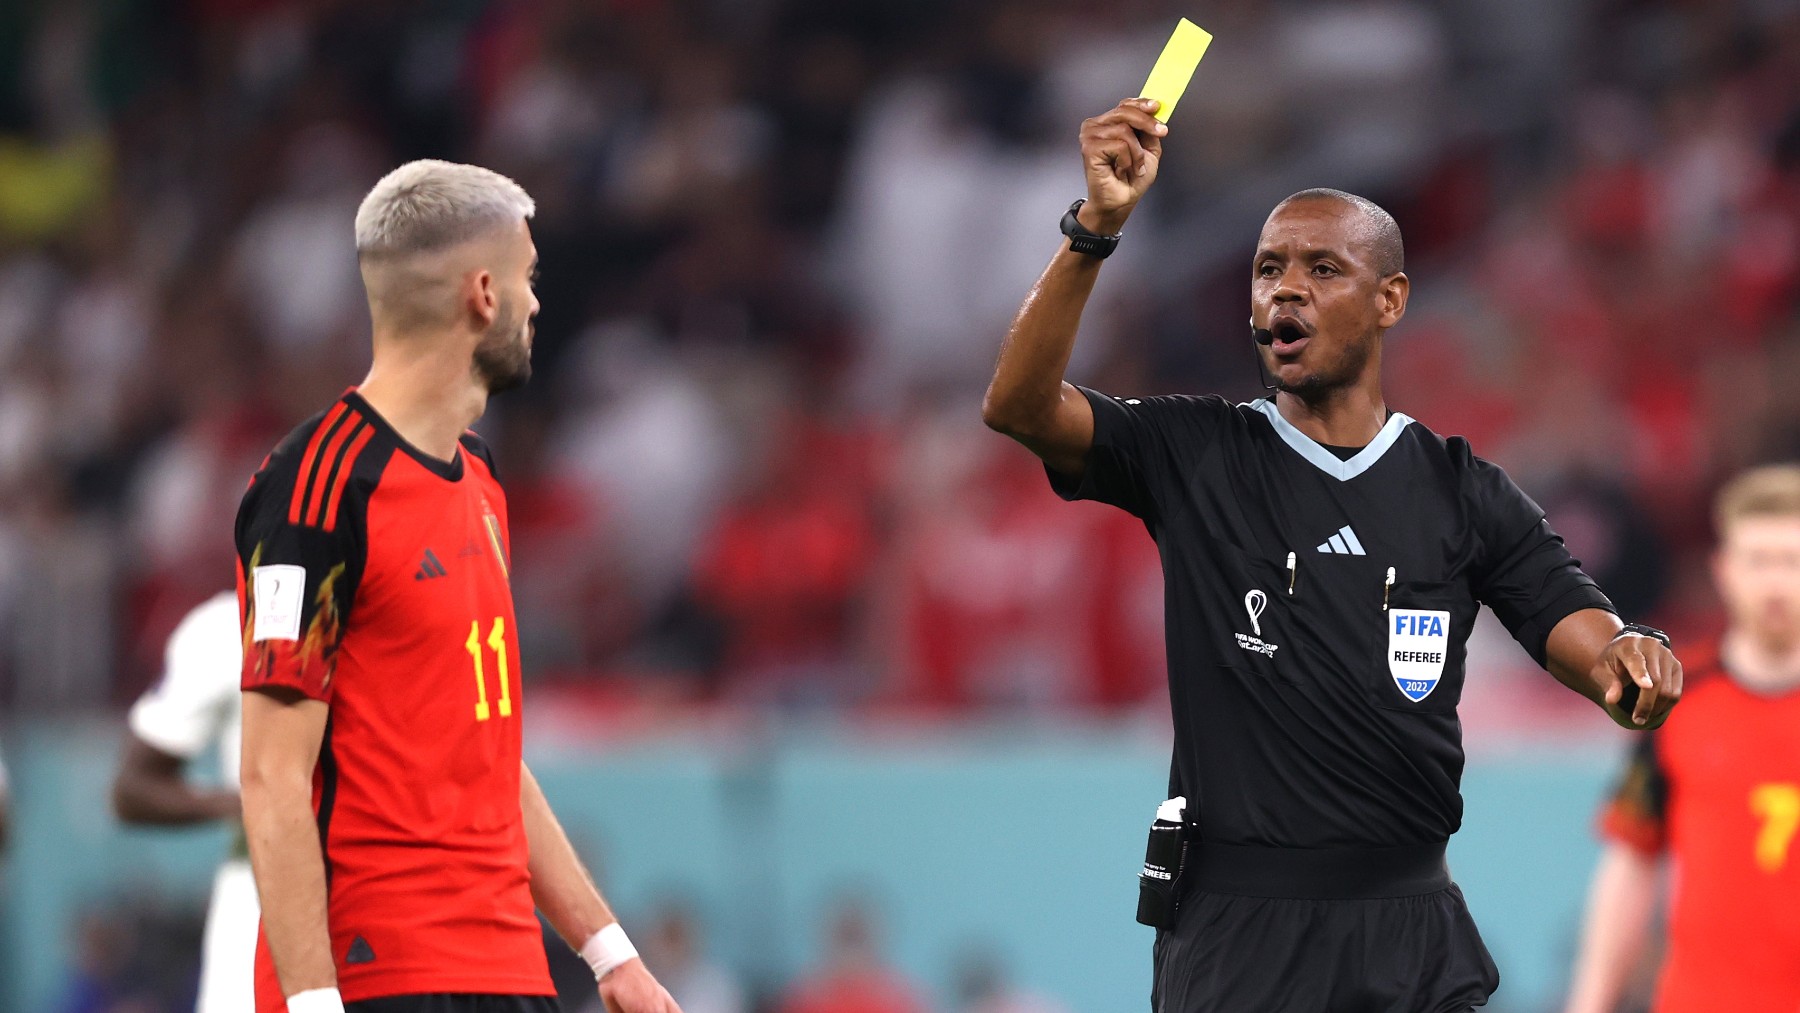 El árbitro enseña una tarjeta amarilla a Carrasco en el Mundial de Qatar 2022. (Getty)